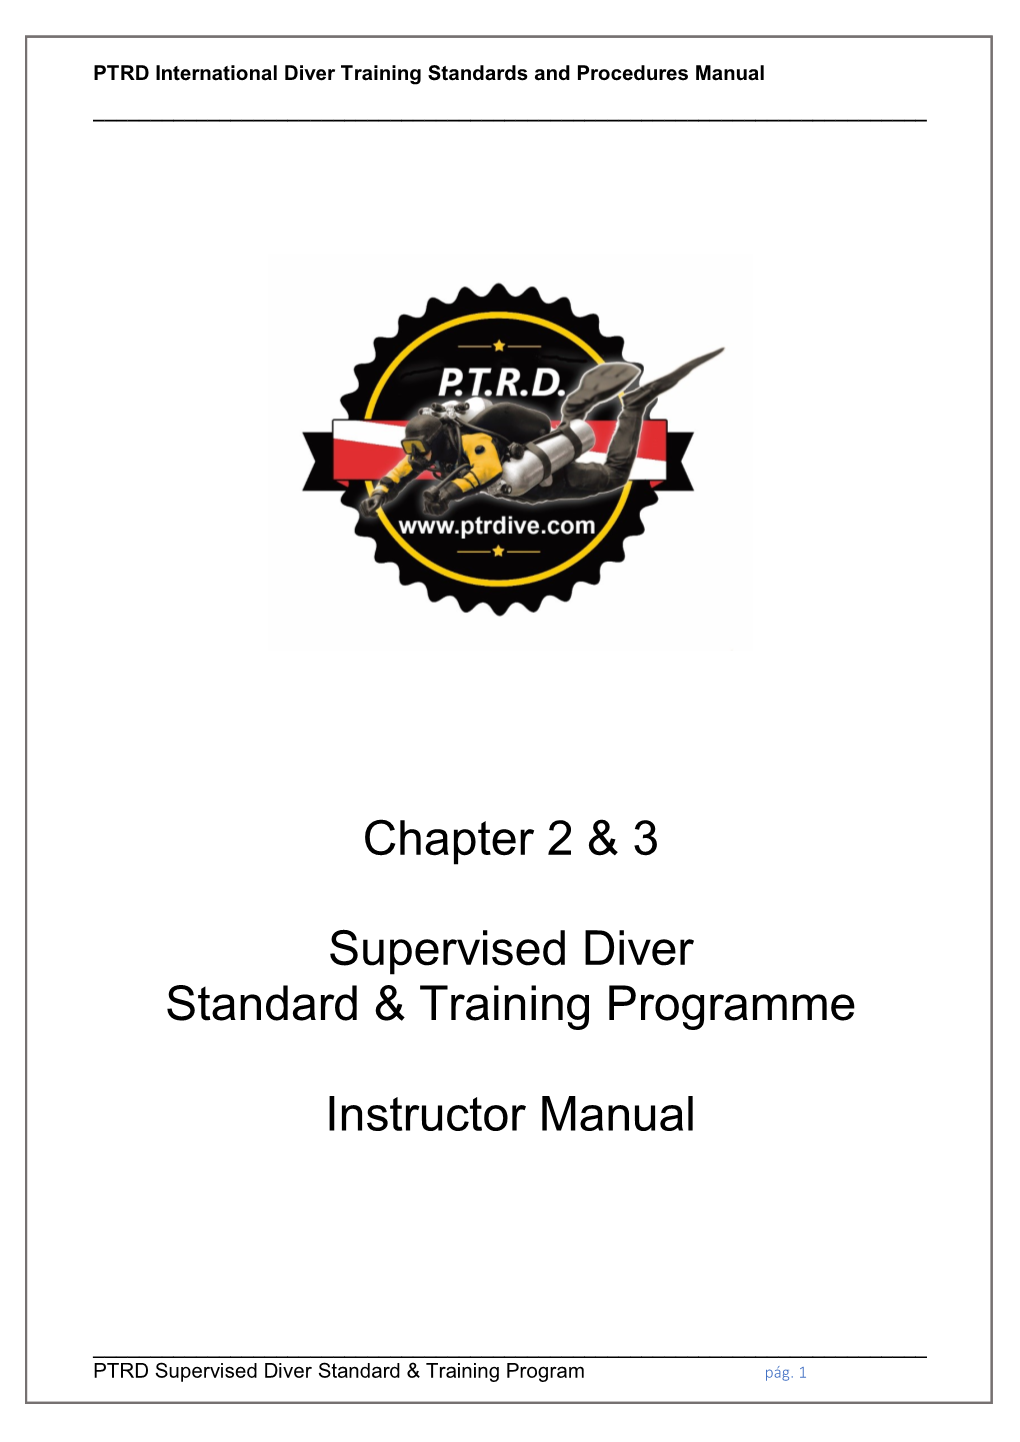 Chapter 2 & 3 Supervised Diver Standard & Training Programme